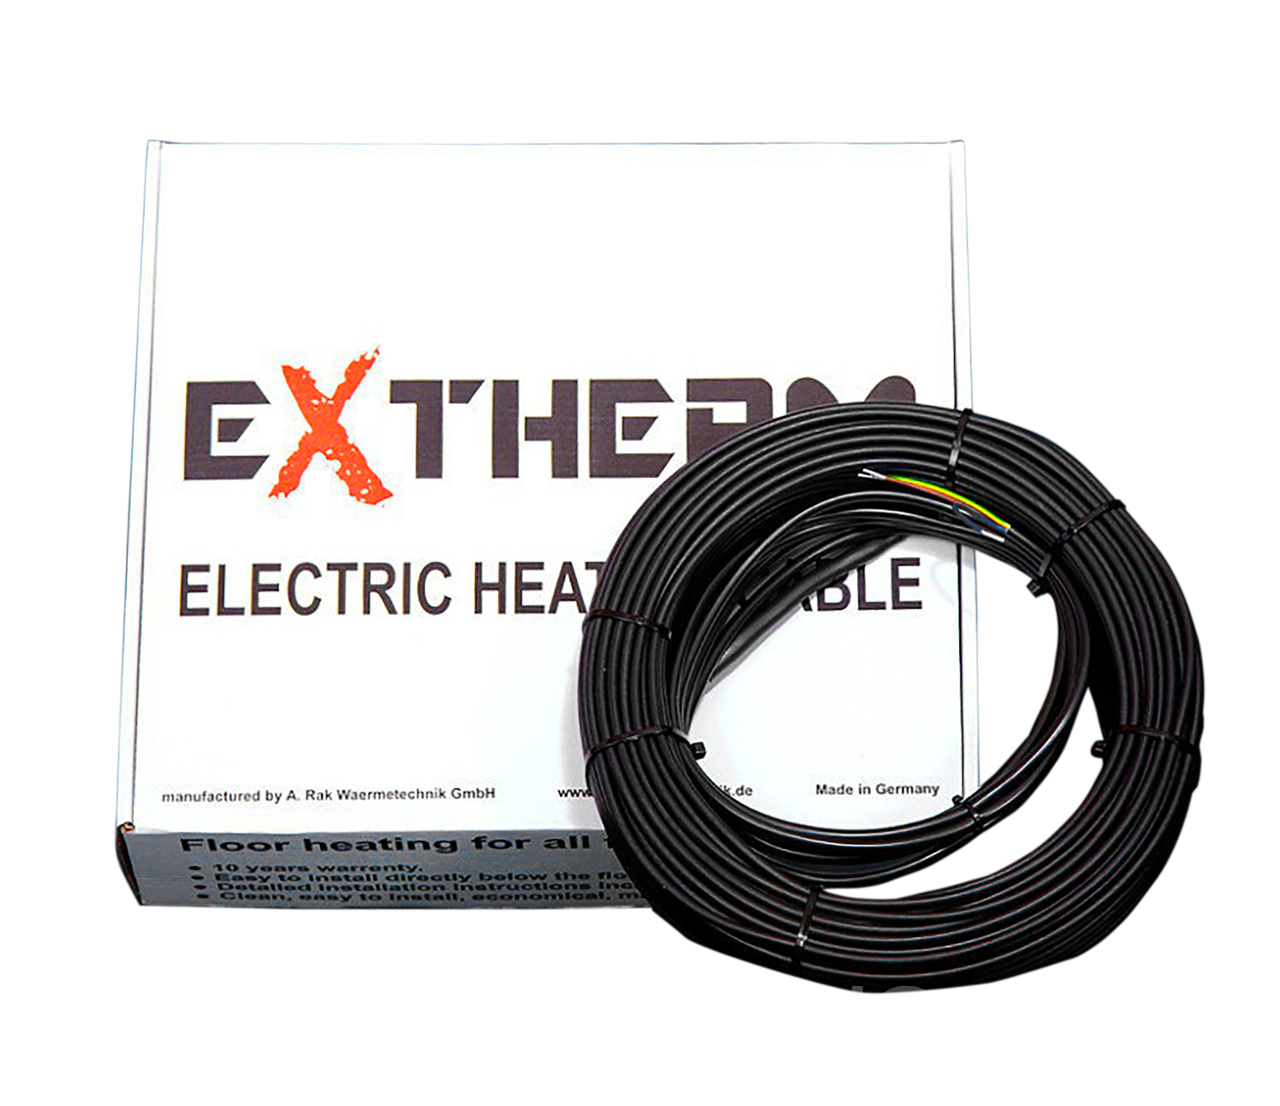 Нагрівальний кабель двожильний Extherm ETT ECO 30-840